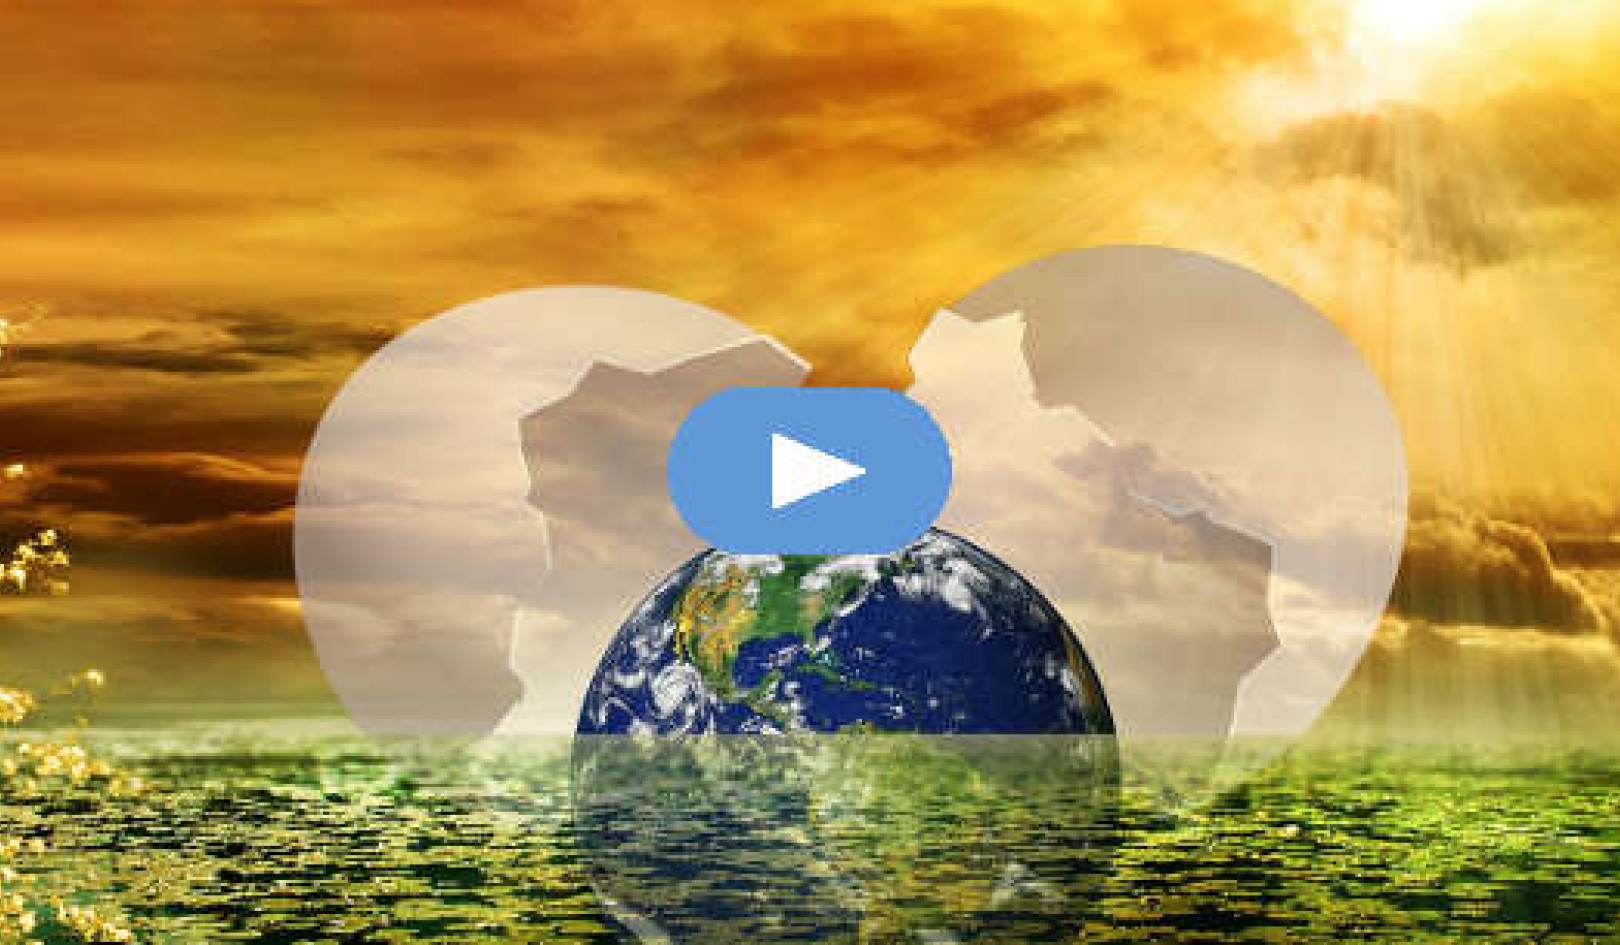 Cân bằng giữa các thay đổi của thế giới (Video)